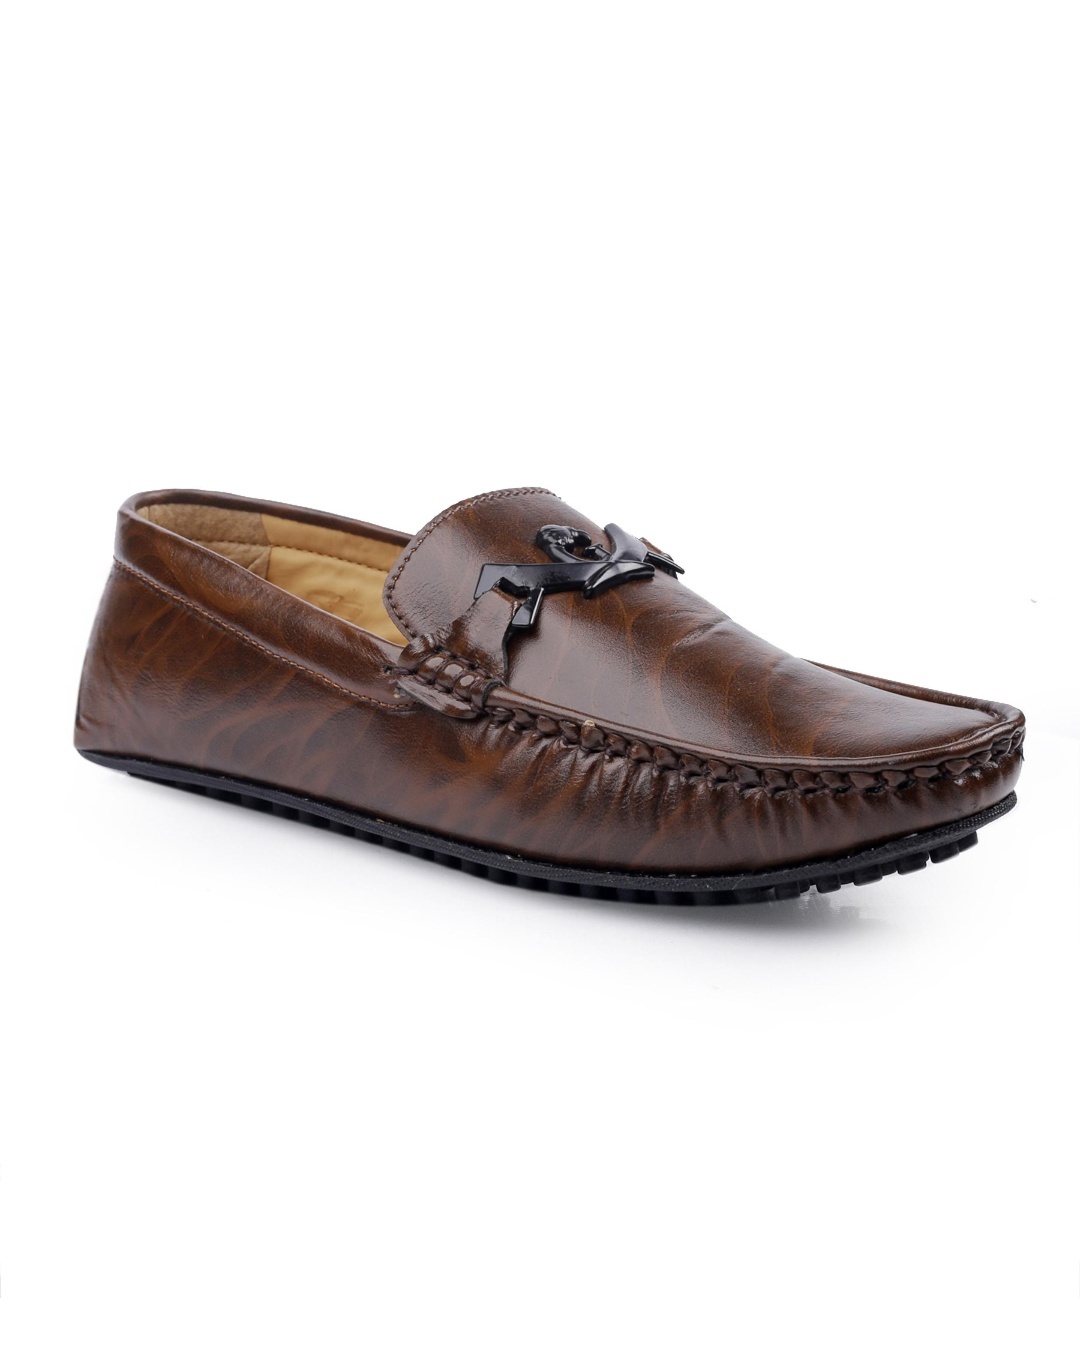 Buy Men's Brown Loafers Online in India at Bewakoof